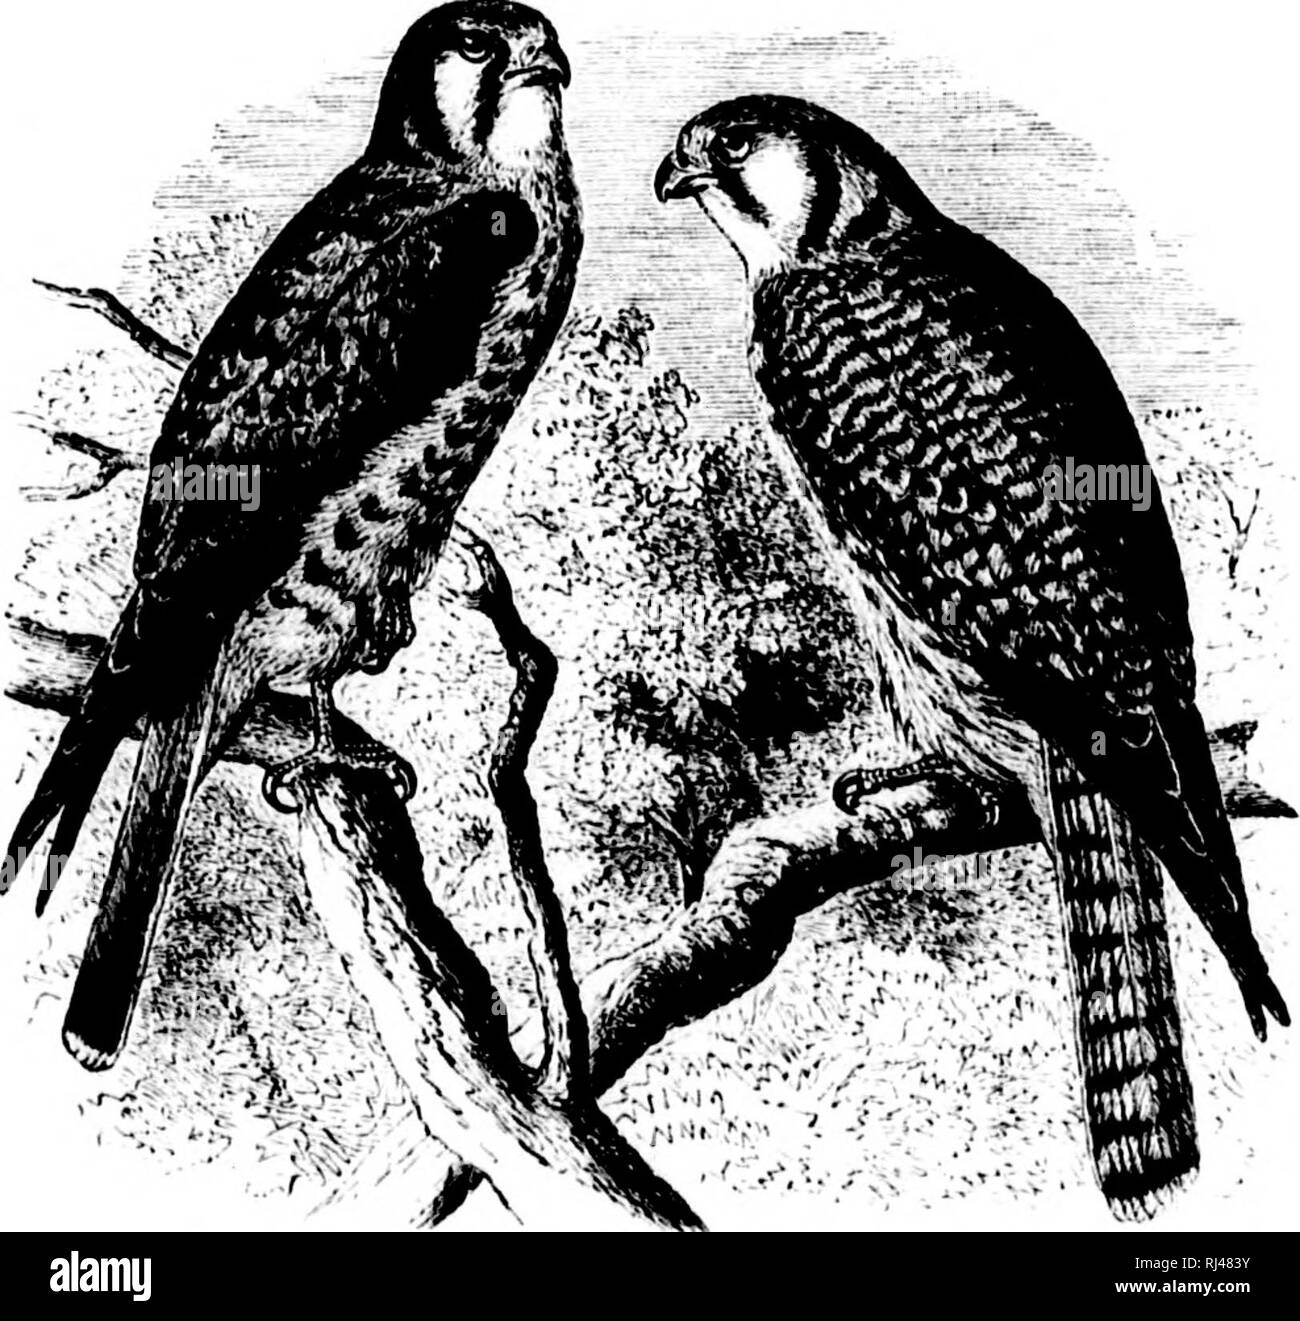 . Une histoire d'oiseaux de l'Amérique du Nord [microforme] : les oiseaux terrestres. Les oiseaux ; ornithologie ; Oiseaux ; Ornithologie. Habitudes alimentaires. L'Épervier d'Amérique a un exteialeil répartition tout au long de la plus grande partie de l'Amérique du Nord, althougli il n'a pas été observé par M. jMacFarlane, ni par une d'autres collectionneurs dans l'Arctique plus re- gie ms, TMI a été elle a rencontré par Monsieur Dall en Alaska. M. IV( !nia- (iitt trouvés il nestirig à F(irt li'esdlution (lal. (I2"), (III Creat Lac des Esclaves, et M : Clark au Fort Jiae. Ce sont les points les plus élevés de wiu'di nous avons tout d'kudwledge sa hav- ment été retracé Banque D'Images